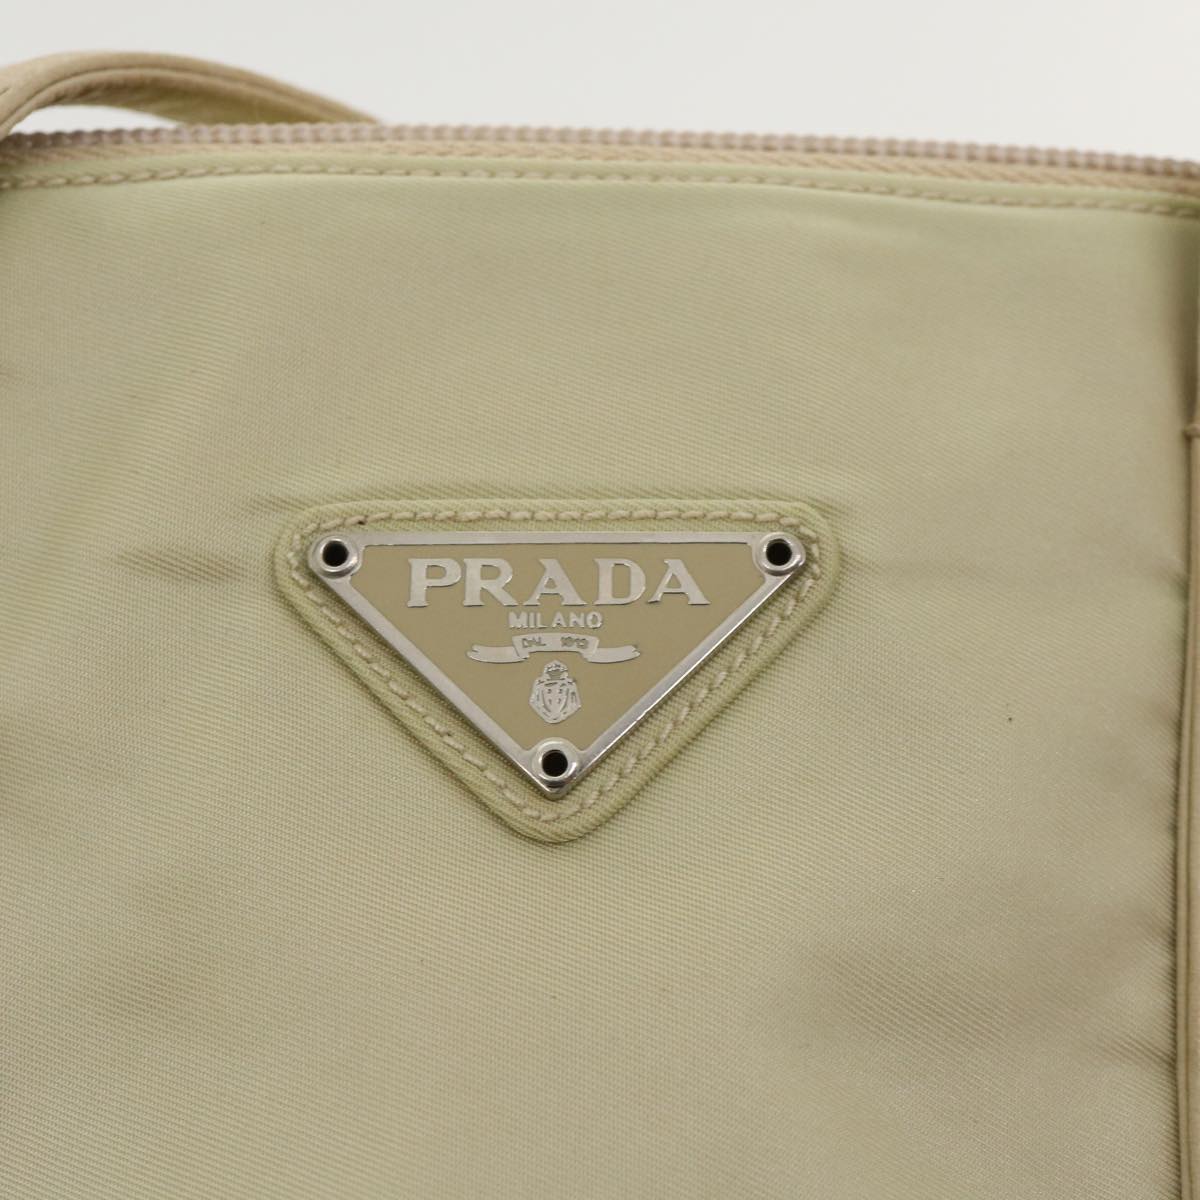 PRADA Hand Bag Nylon Beige Auth yk5235B